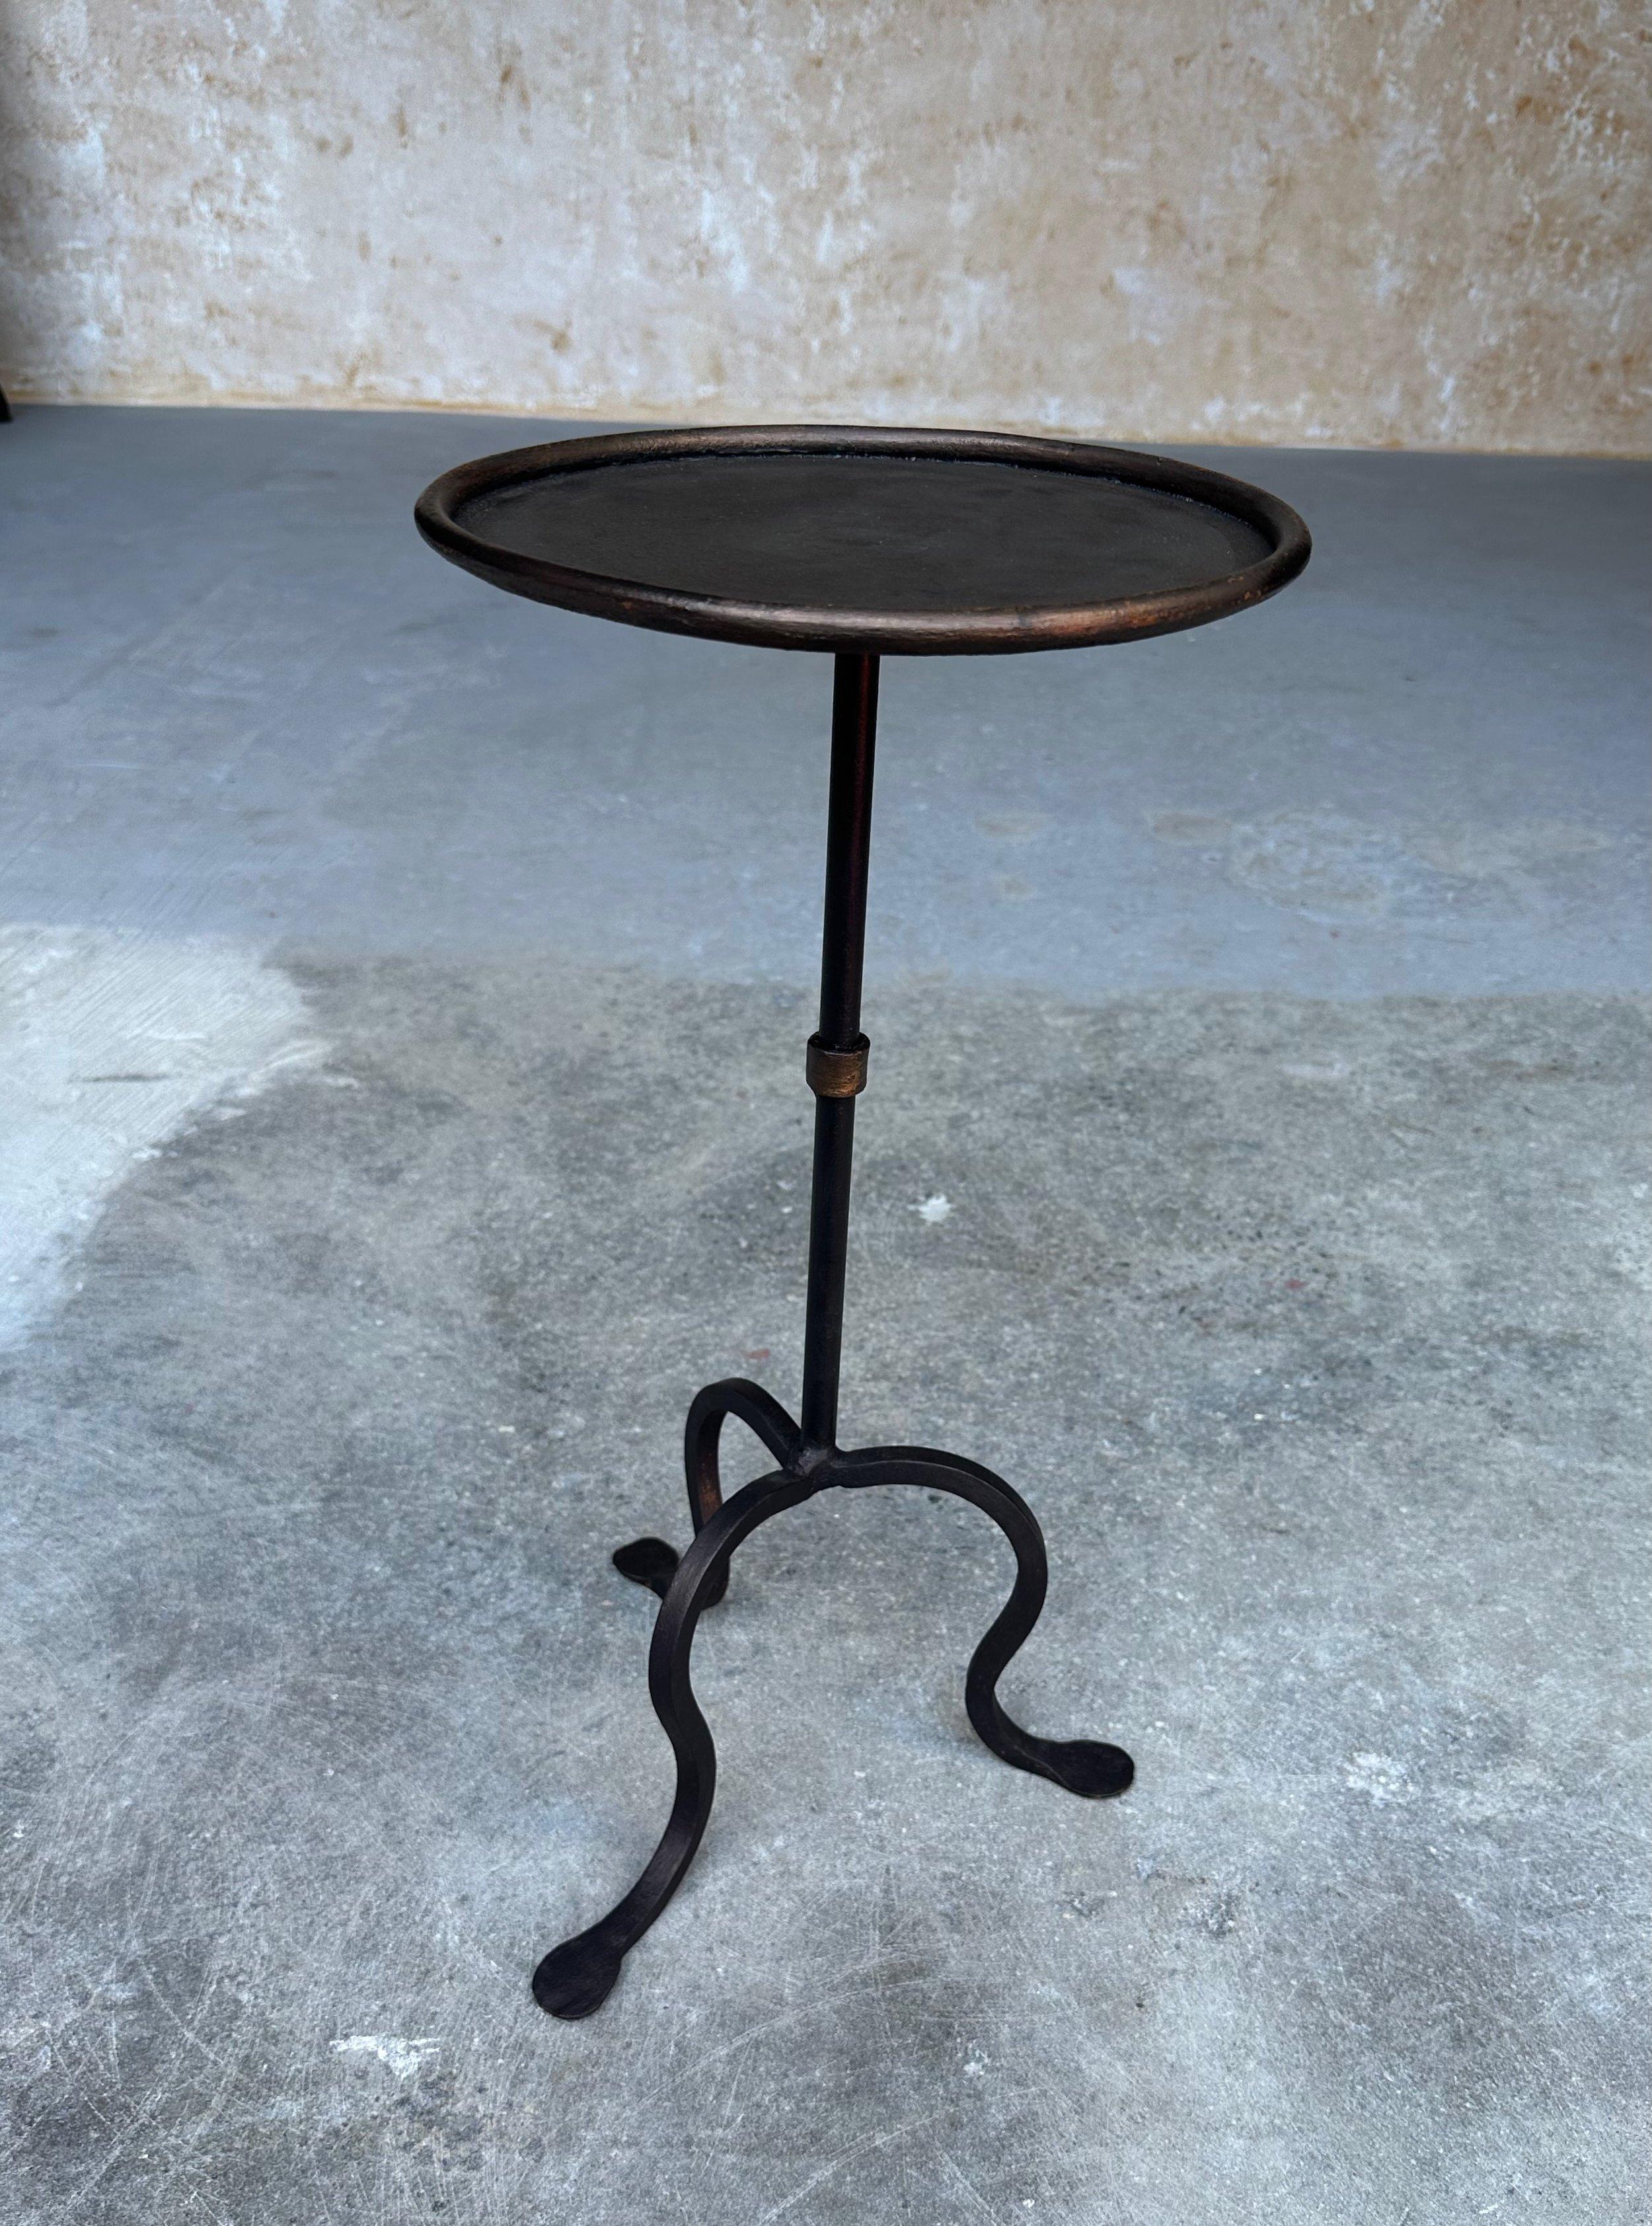 Dieser hübsche spanische Eisentisch wurde vor kurzem von europäischen Kunsthandwerkern mit traditionellen Eisenbearbeitungstechniken hergestellt. Sie ist einem unserer beliebtesten Vintage-Designs nachempfunden und verfügt über ein von Hand